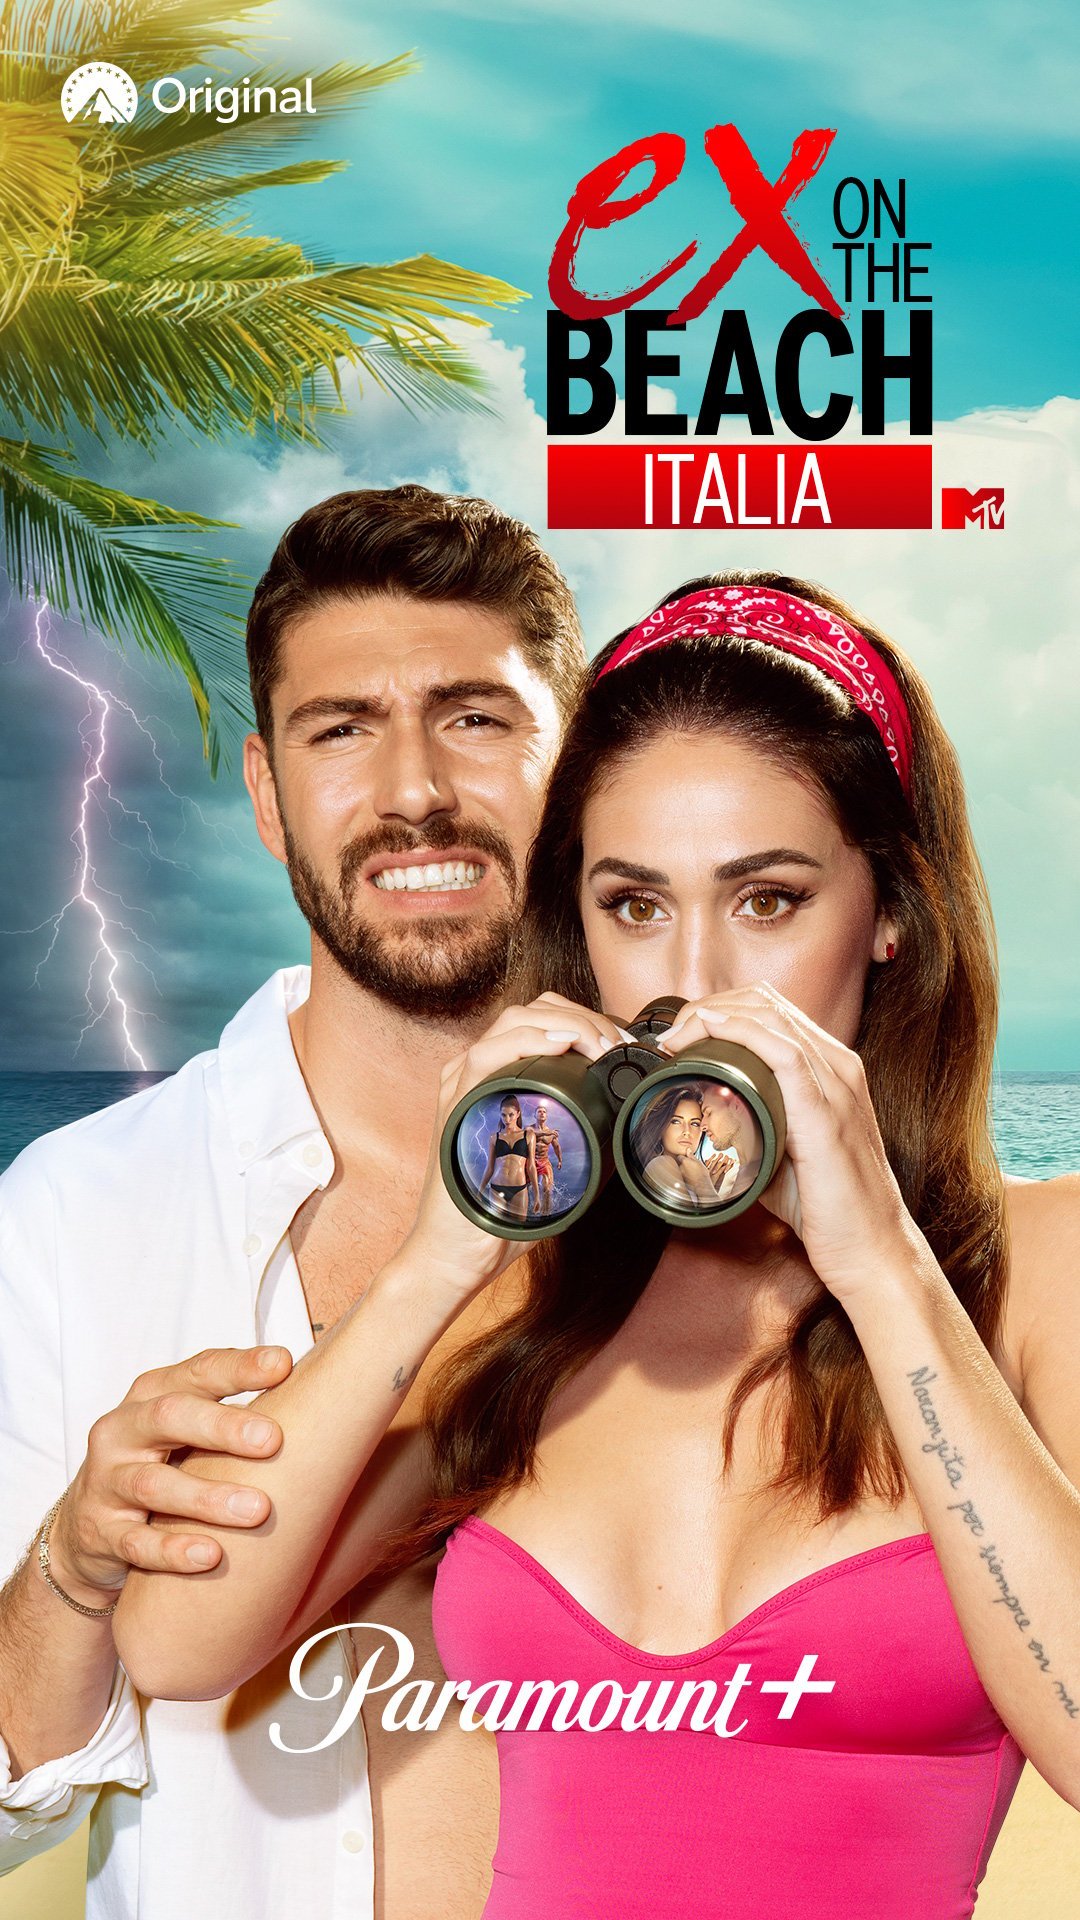 אקס על החוף איטליה 4 | פוסטר רשמי | איגנציו מוזר וססיליה רודריגז עם משקפת